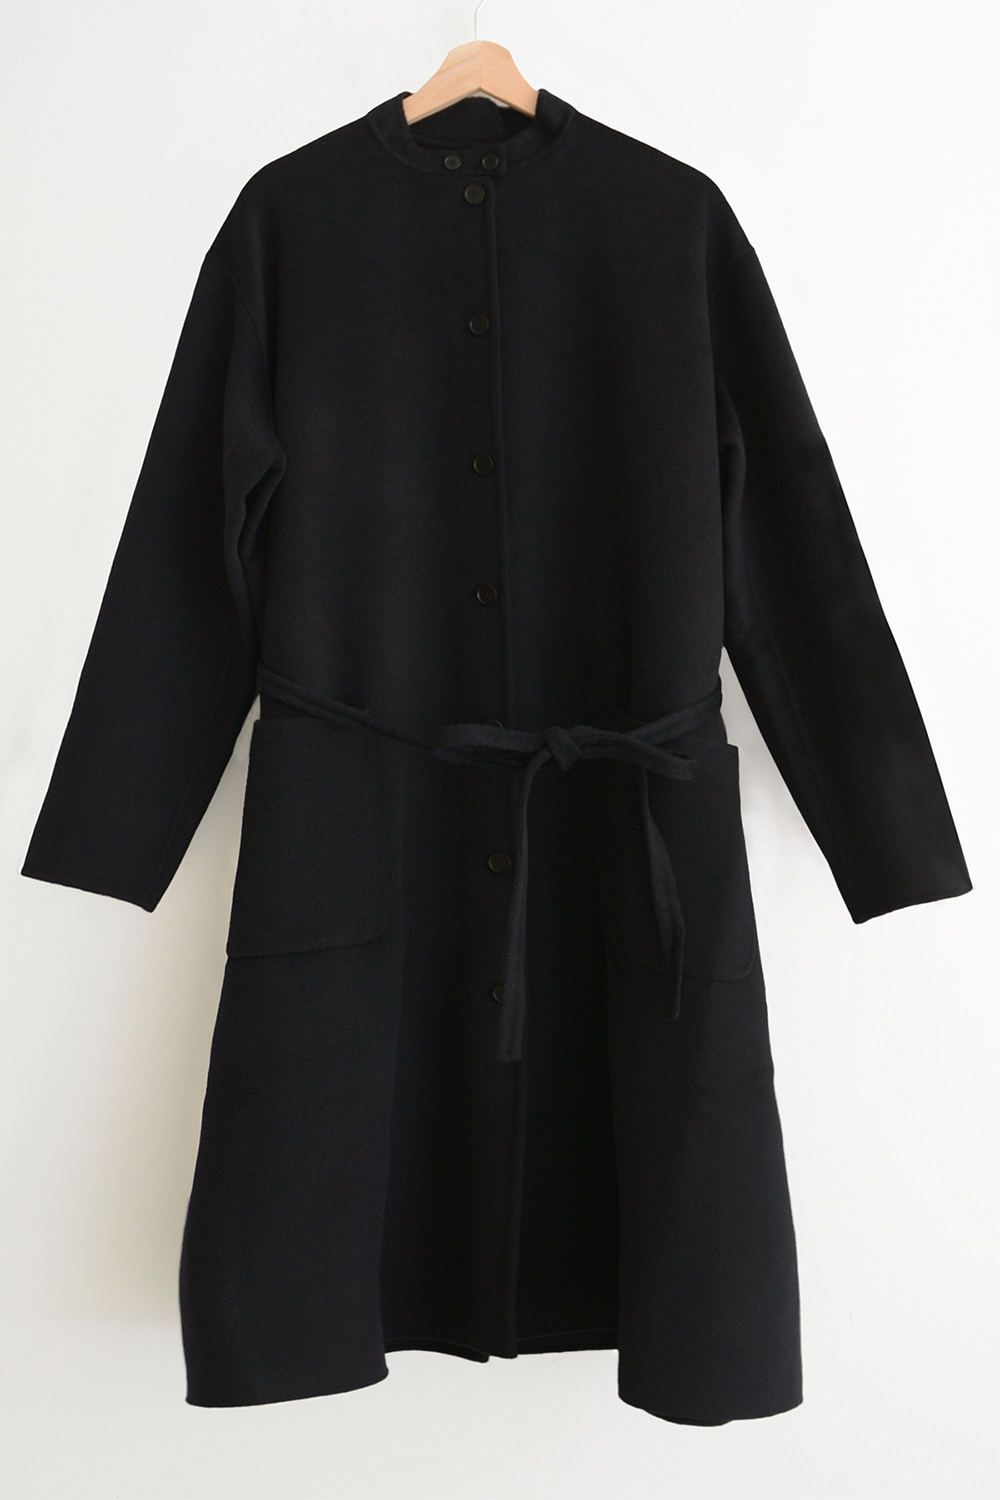 manuelle guibal 6533 cashmere coat black top picture